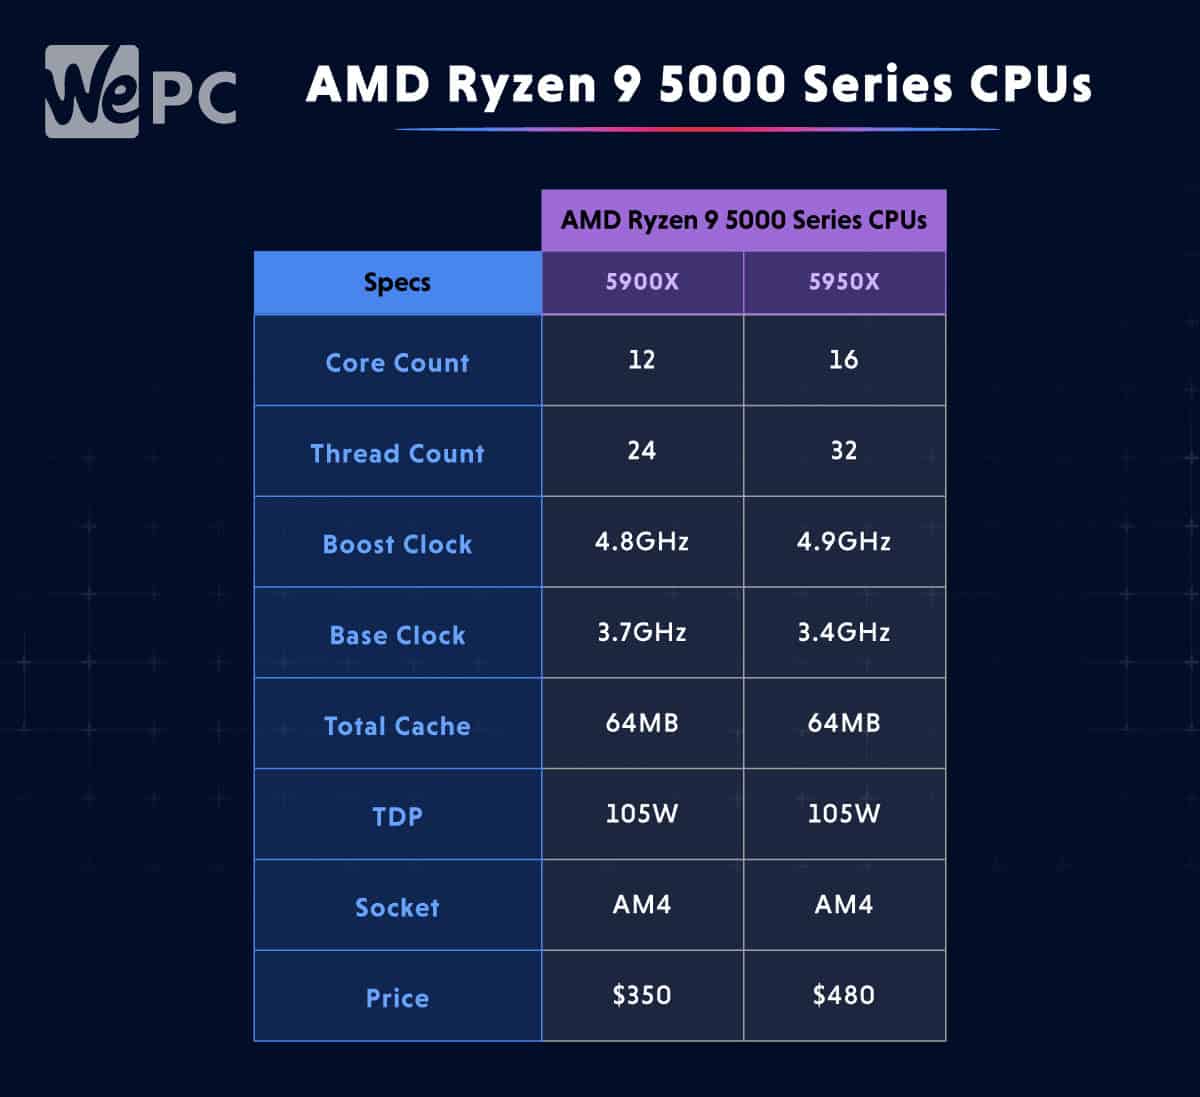 AMD Ryzen 9 5000 Series CPUs